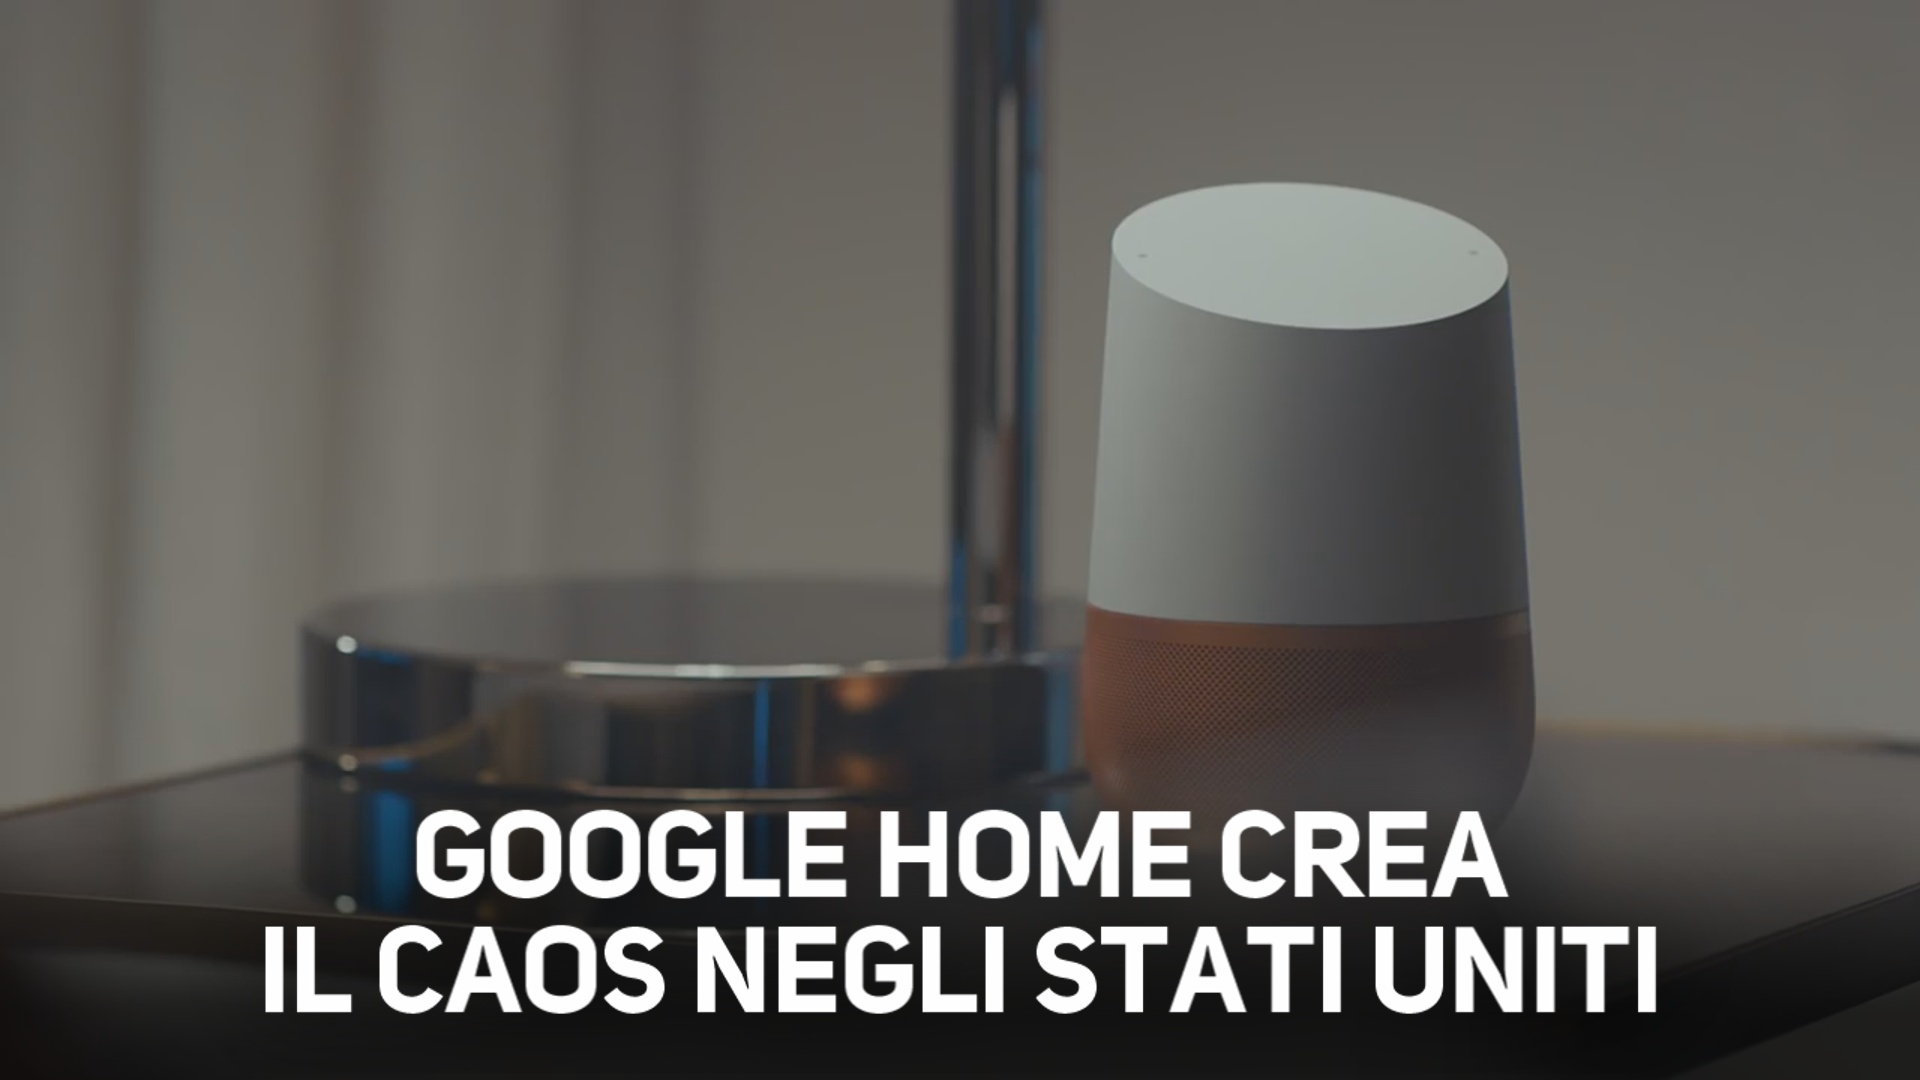 Google Home: la voce dello spot li ha attivati tutti!